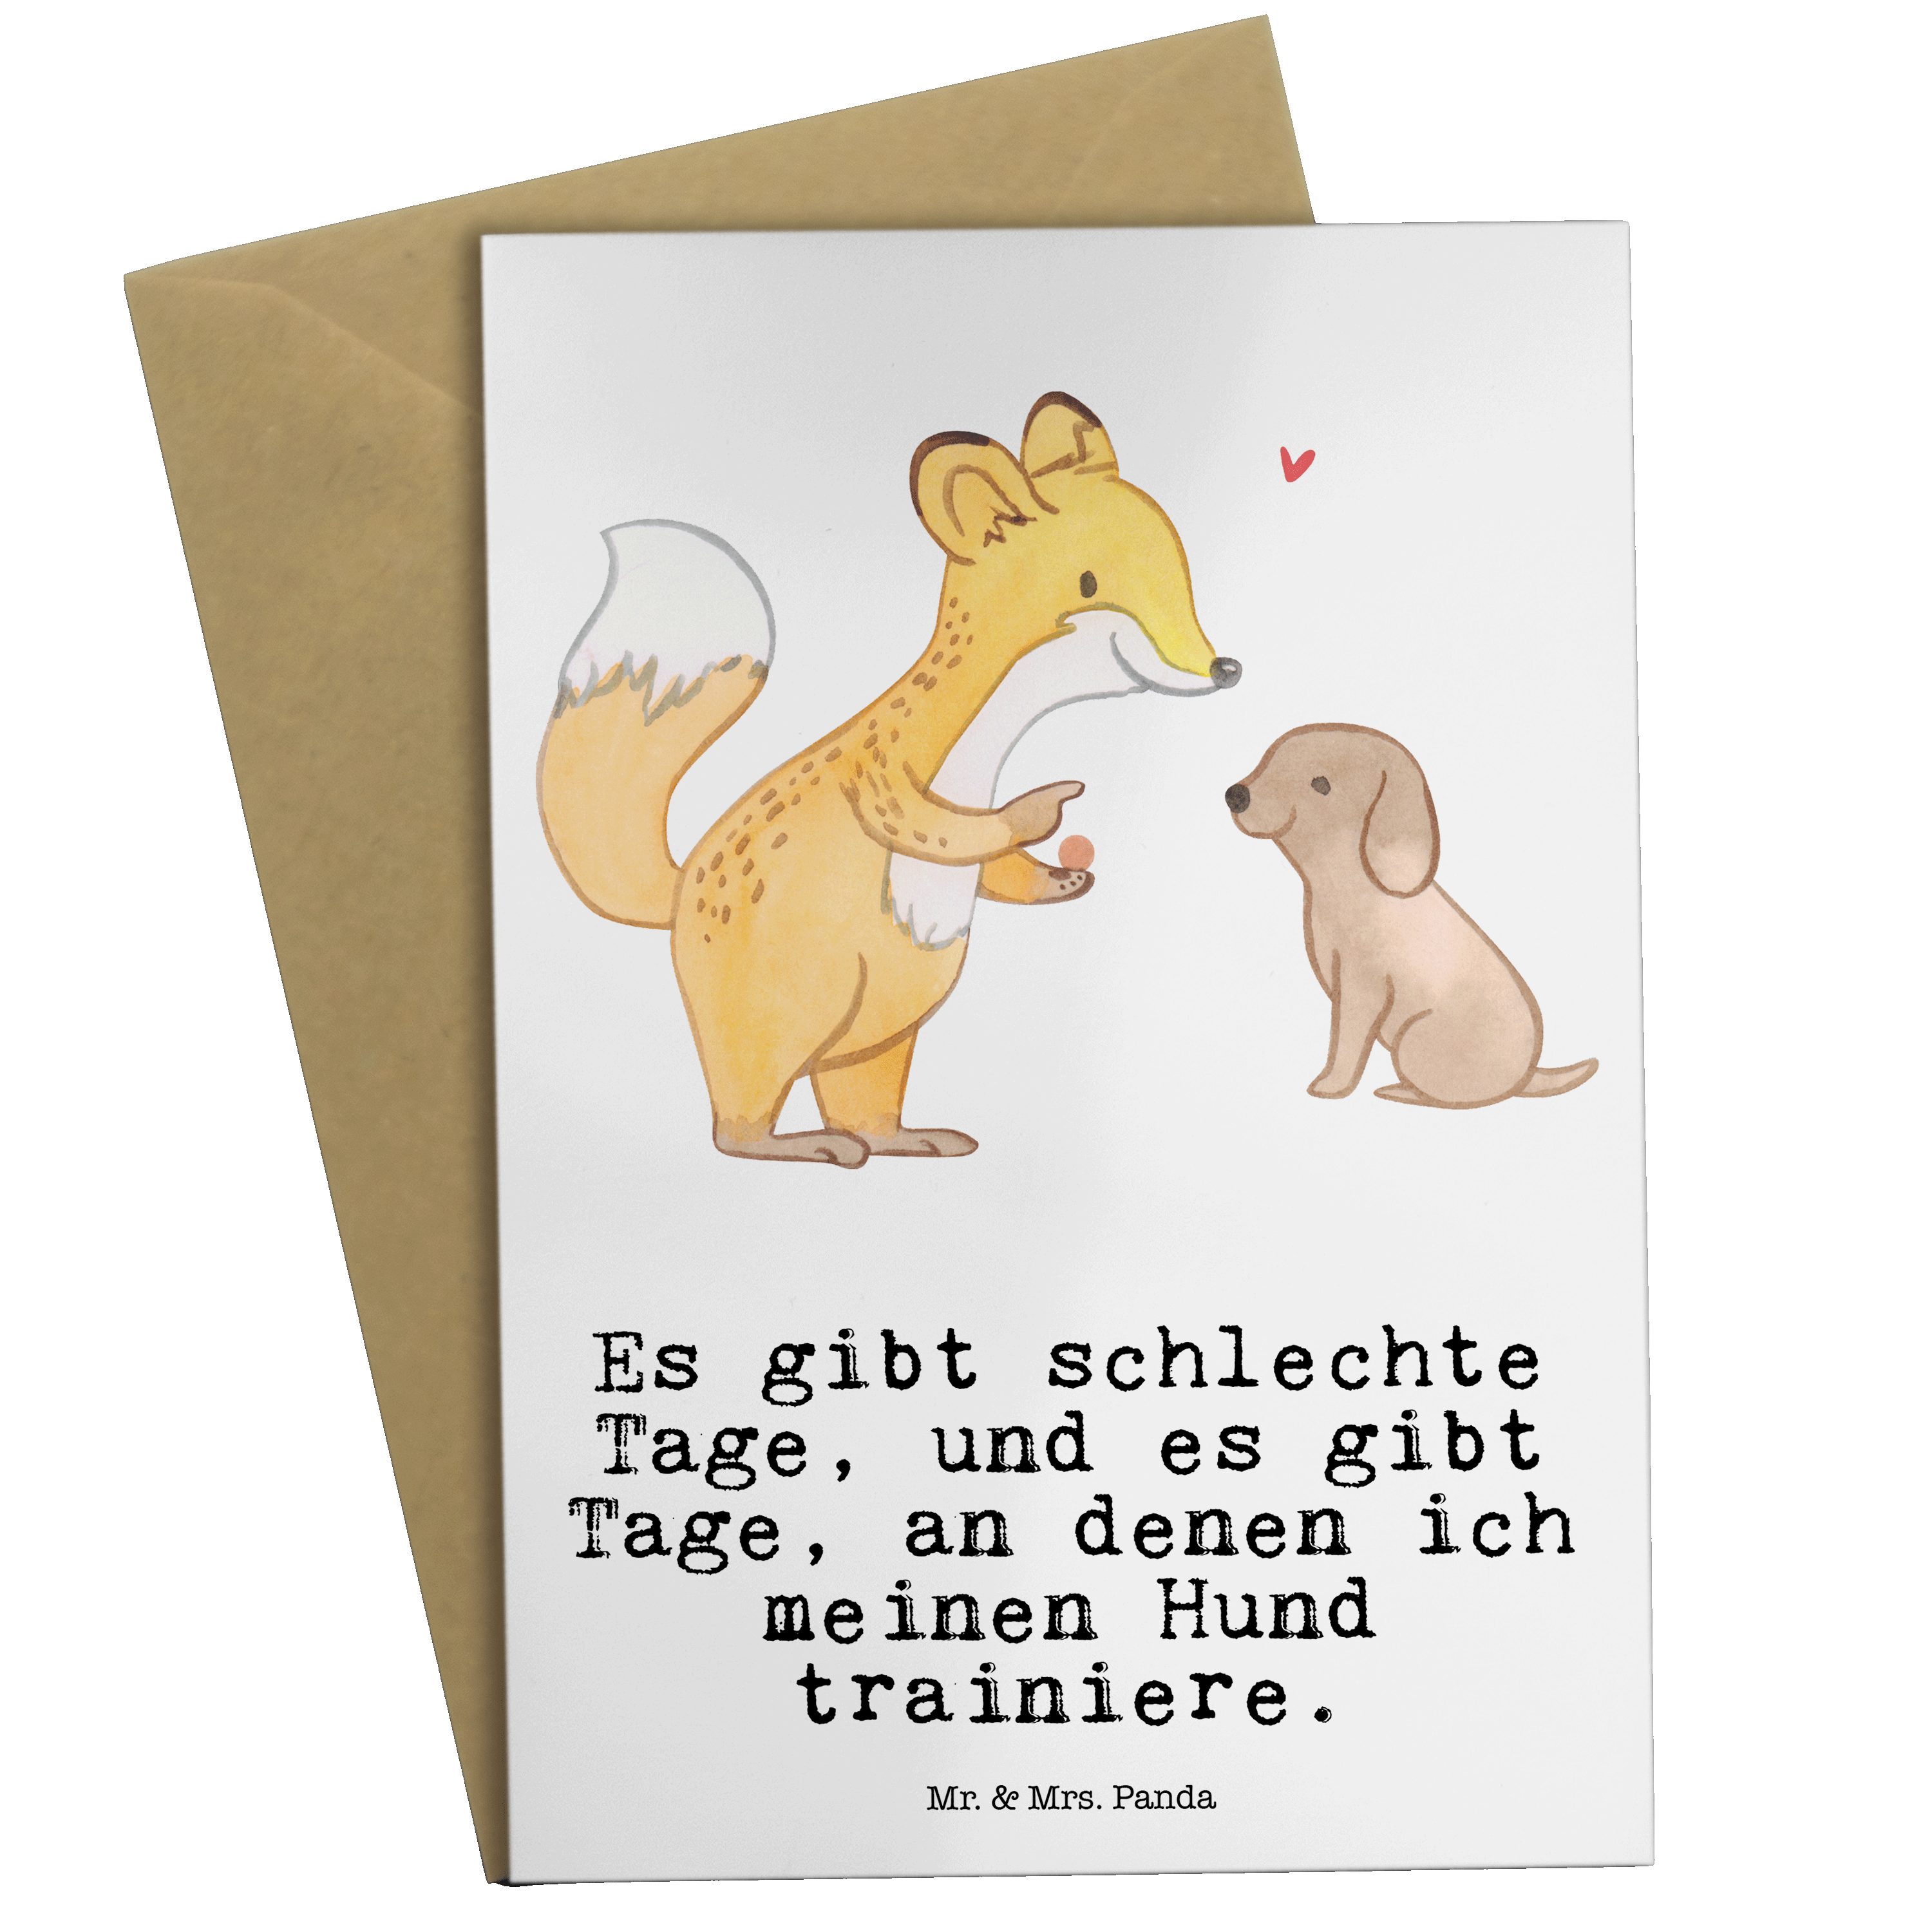 Mr. & Mrs. Panda Grußkarte Fuchs Hundetraining Tage - Weiß - Geschenk, Auszeichnung, Karte, Hund